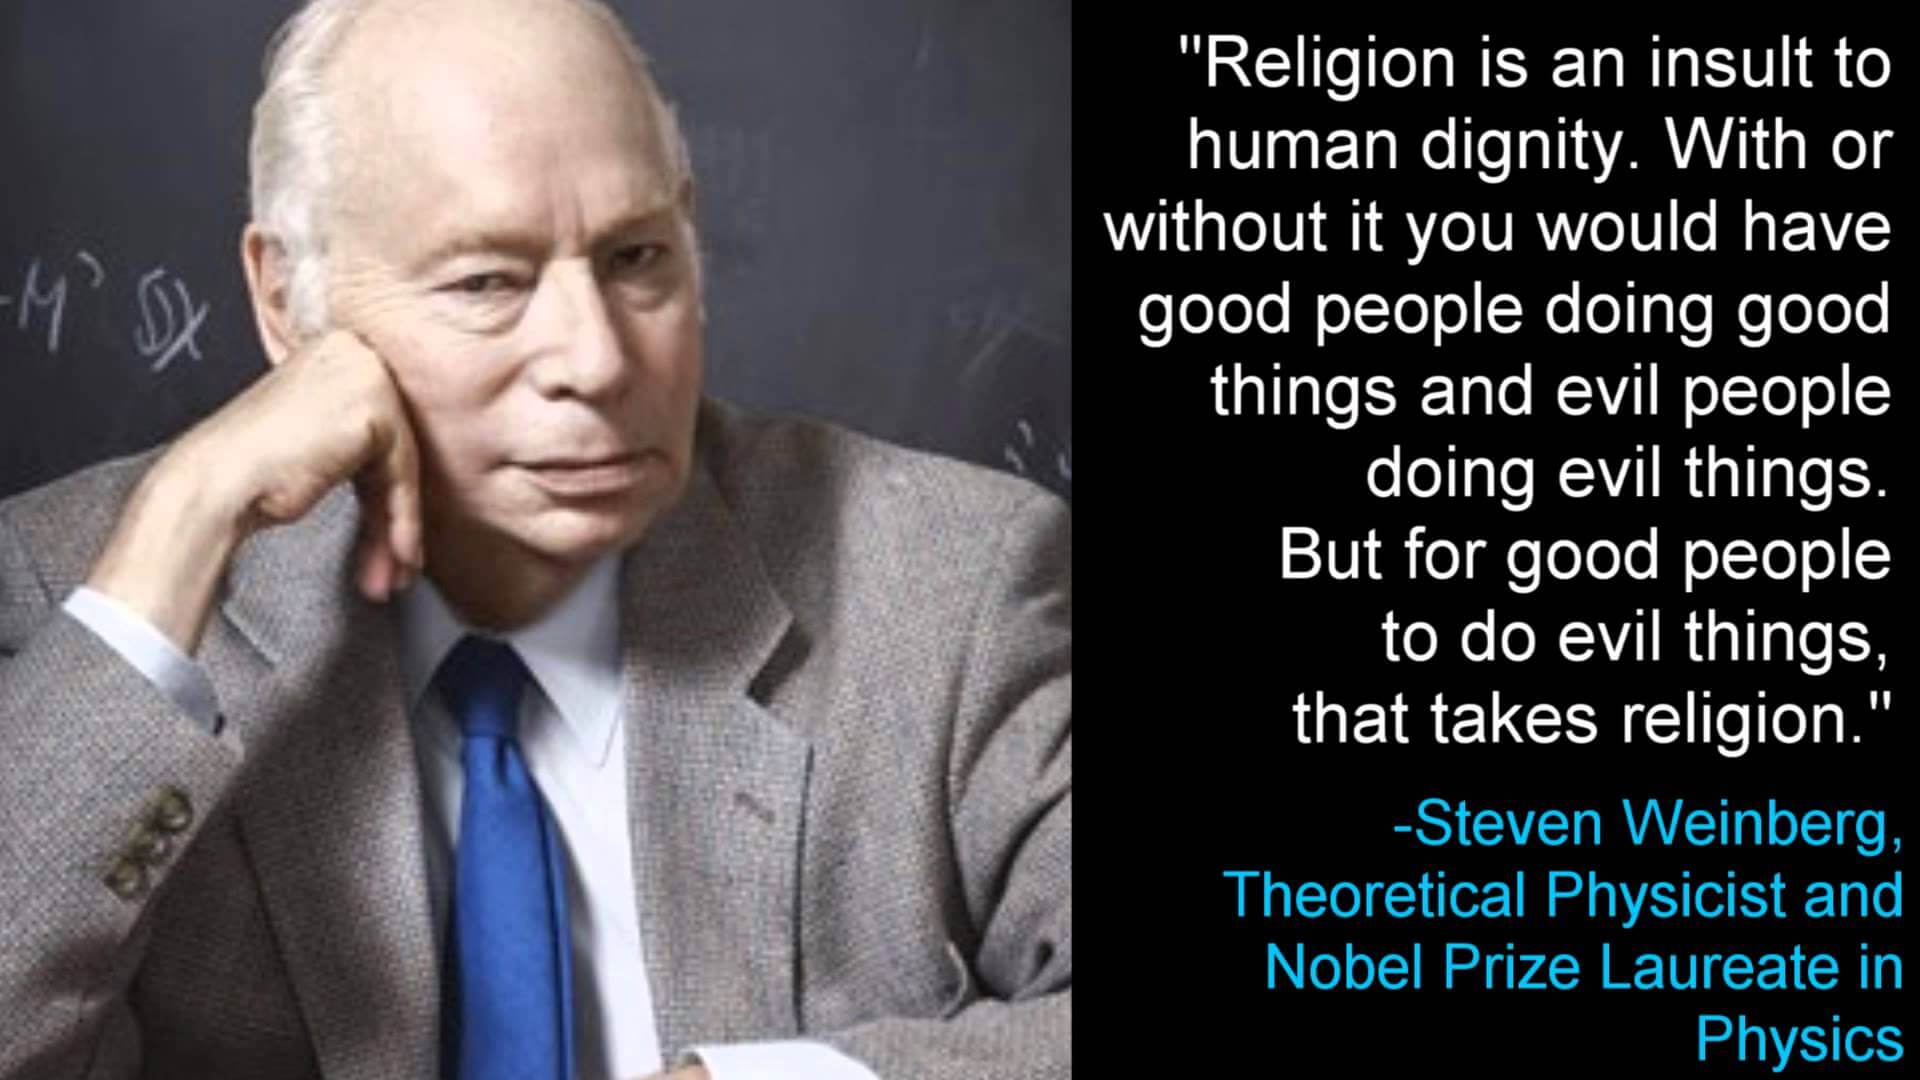 Steven Weinberg on Religion 3